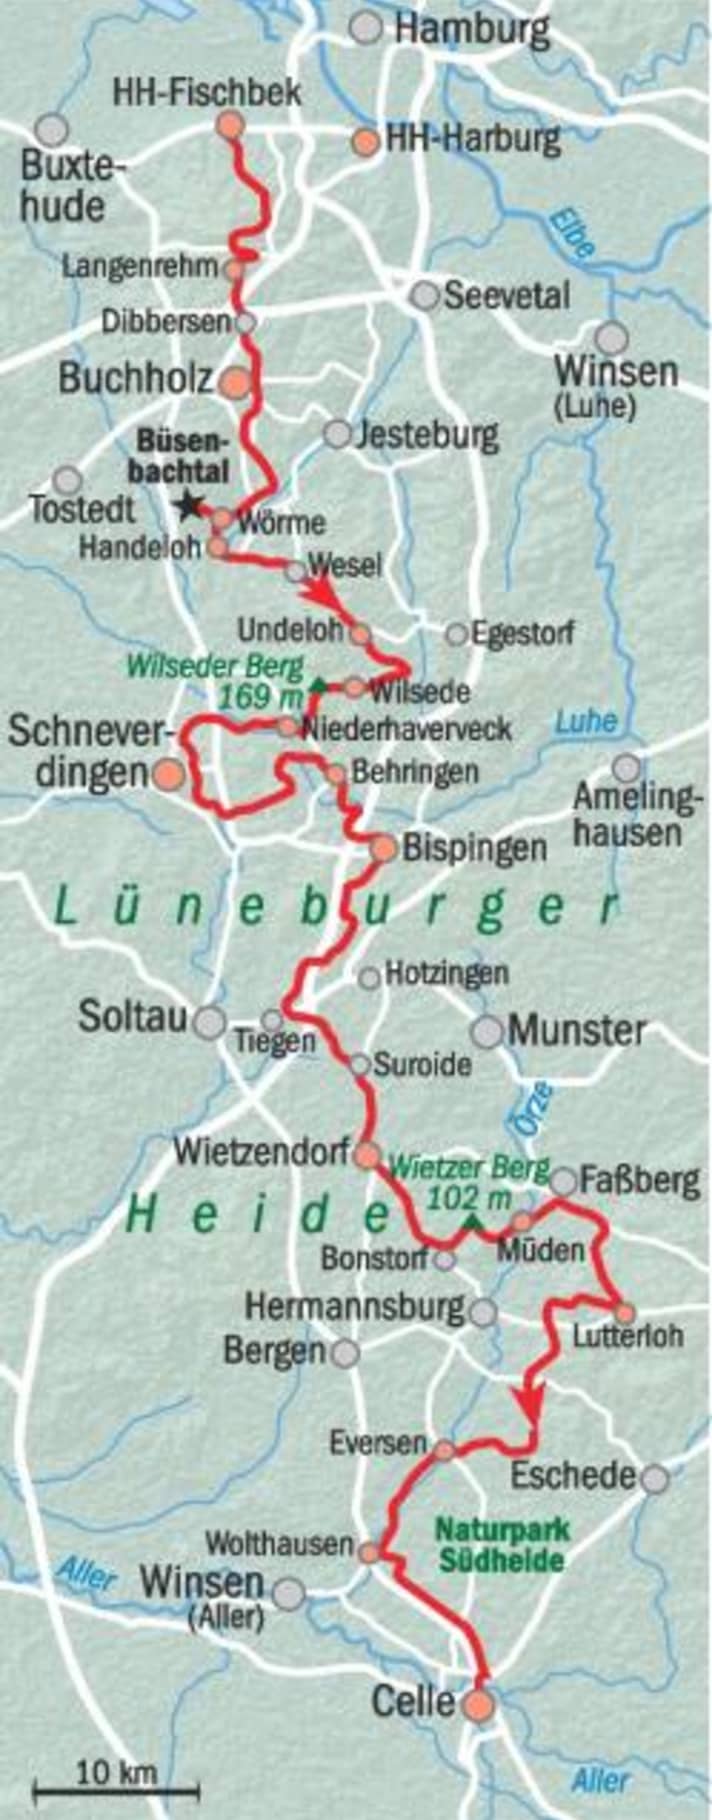 De route van de fietstocht door de Lüneburger Heide.